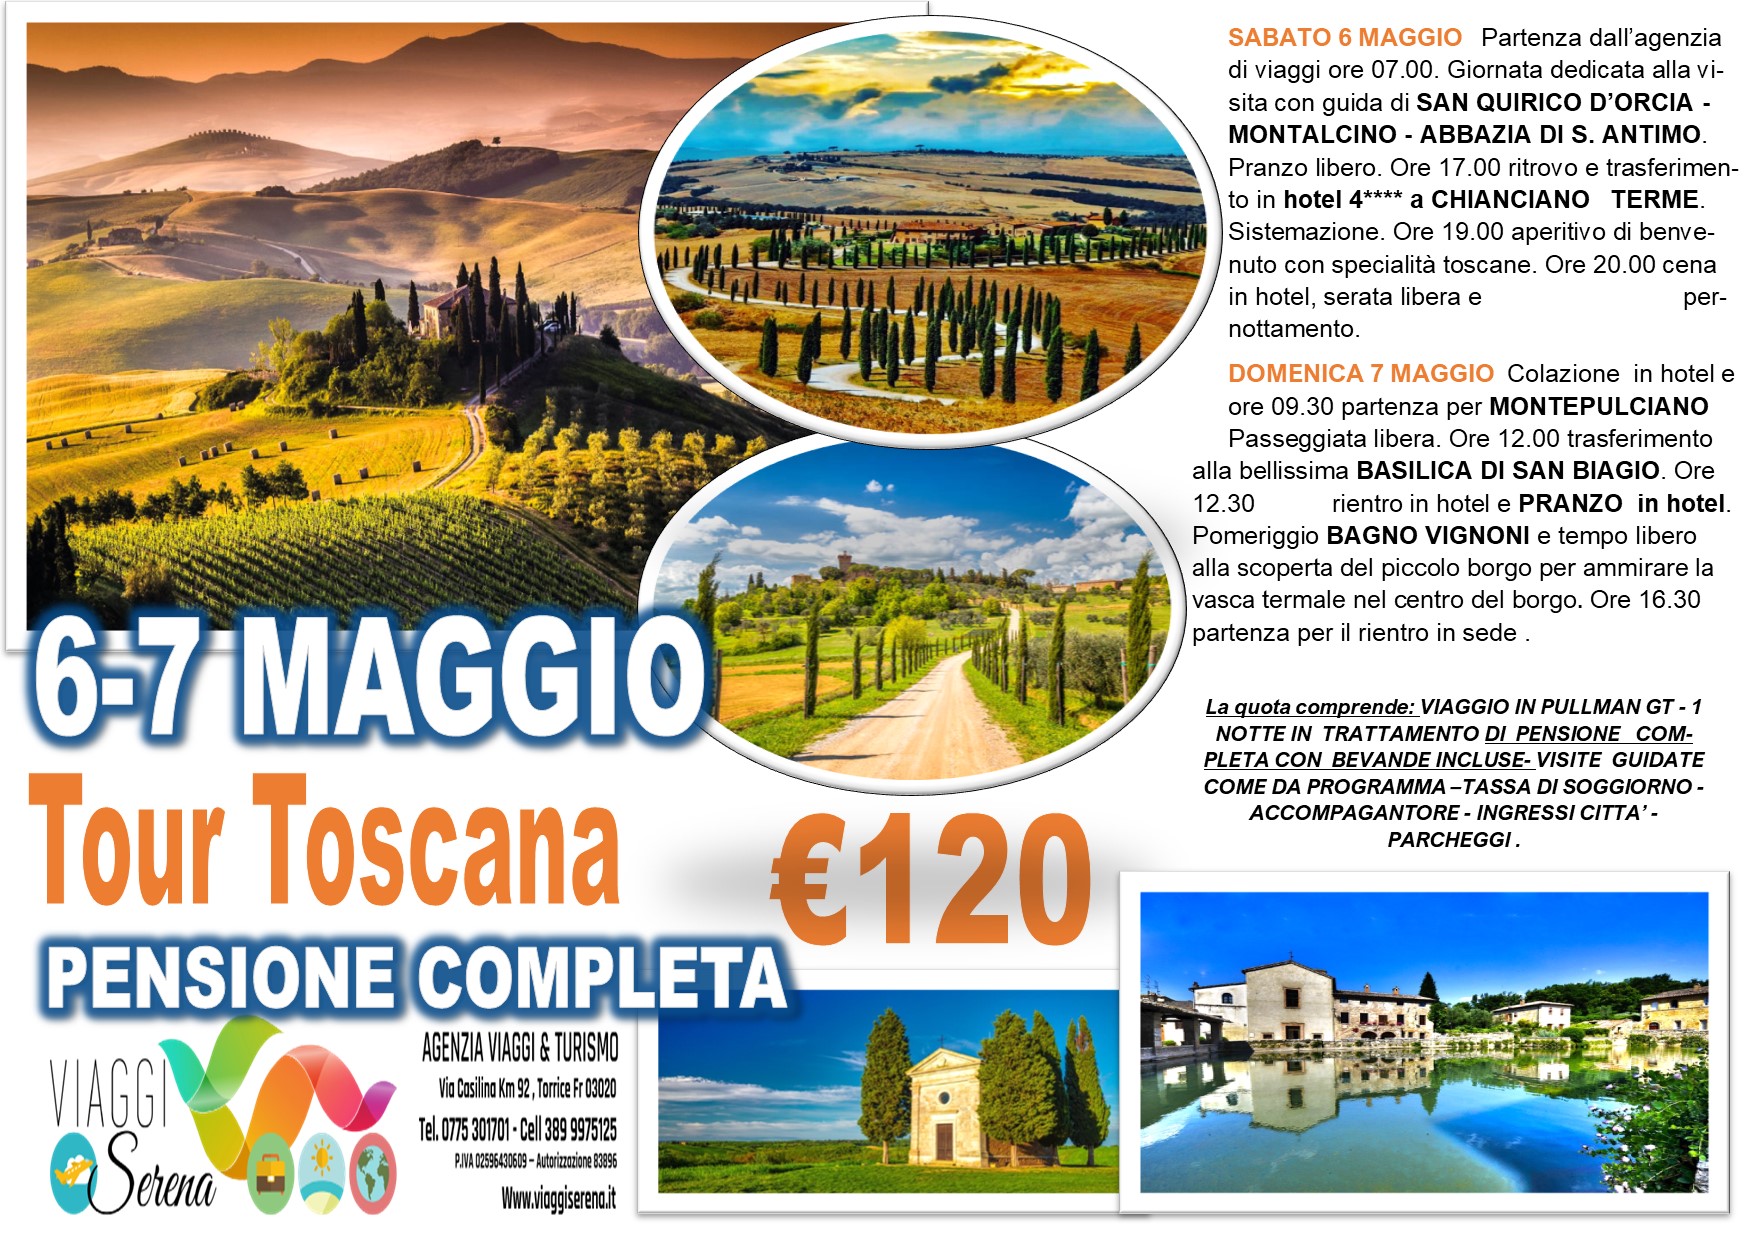 Viaggi di Gruppo: Tour Toscana “Val d’ORCIA” PENSIONE COMPLETA 6-7 Maggio € 120,00